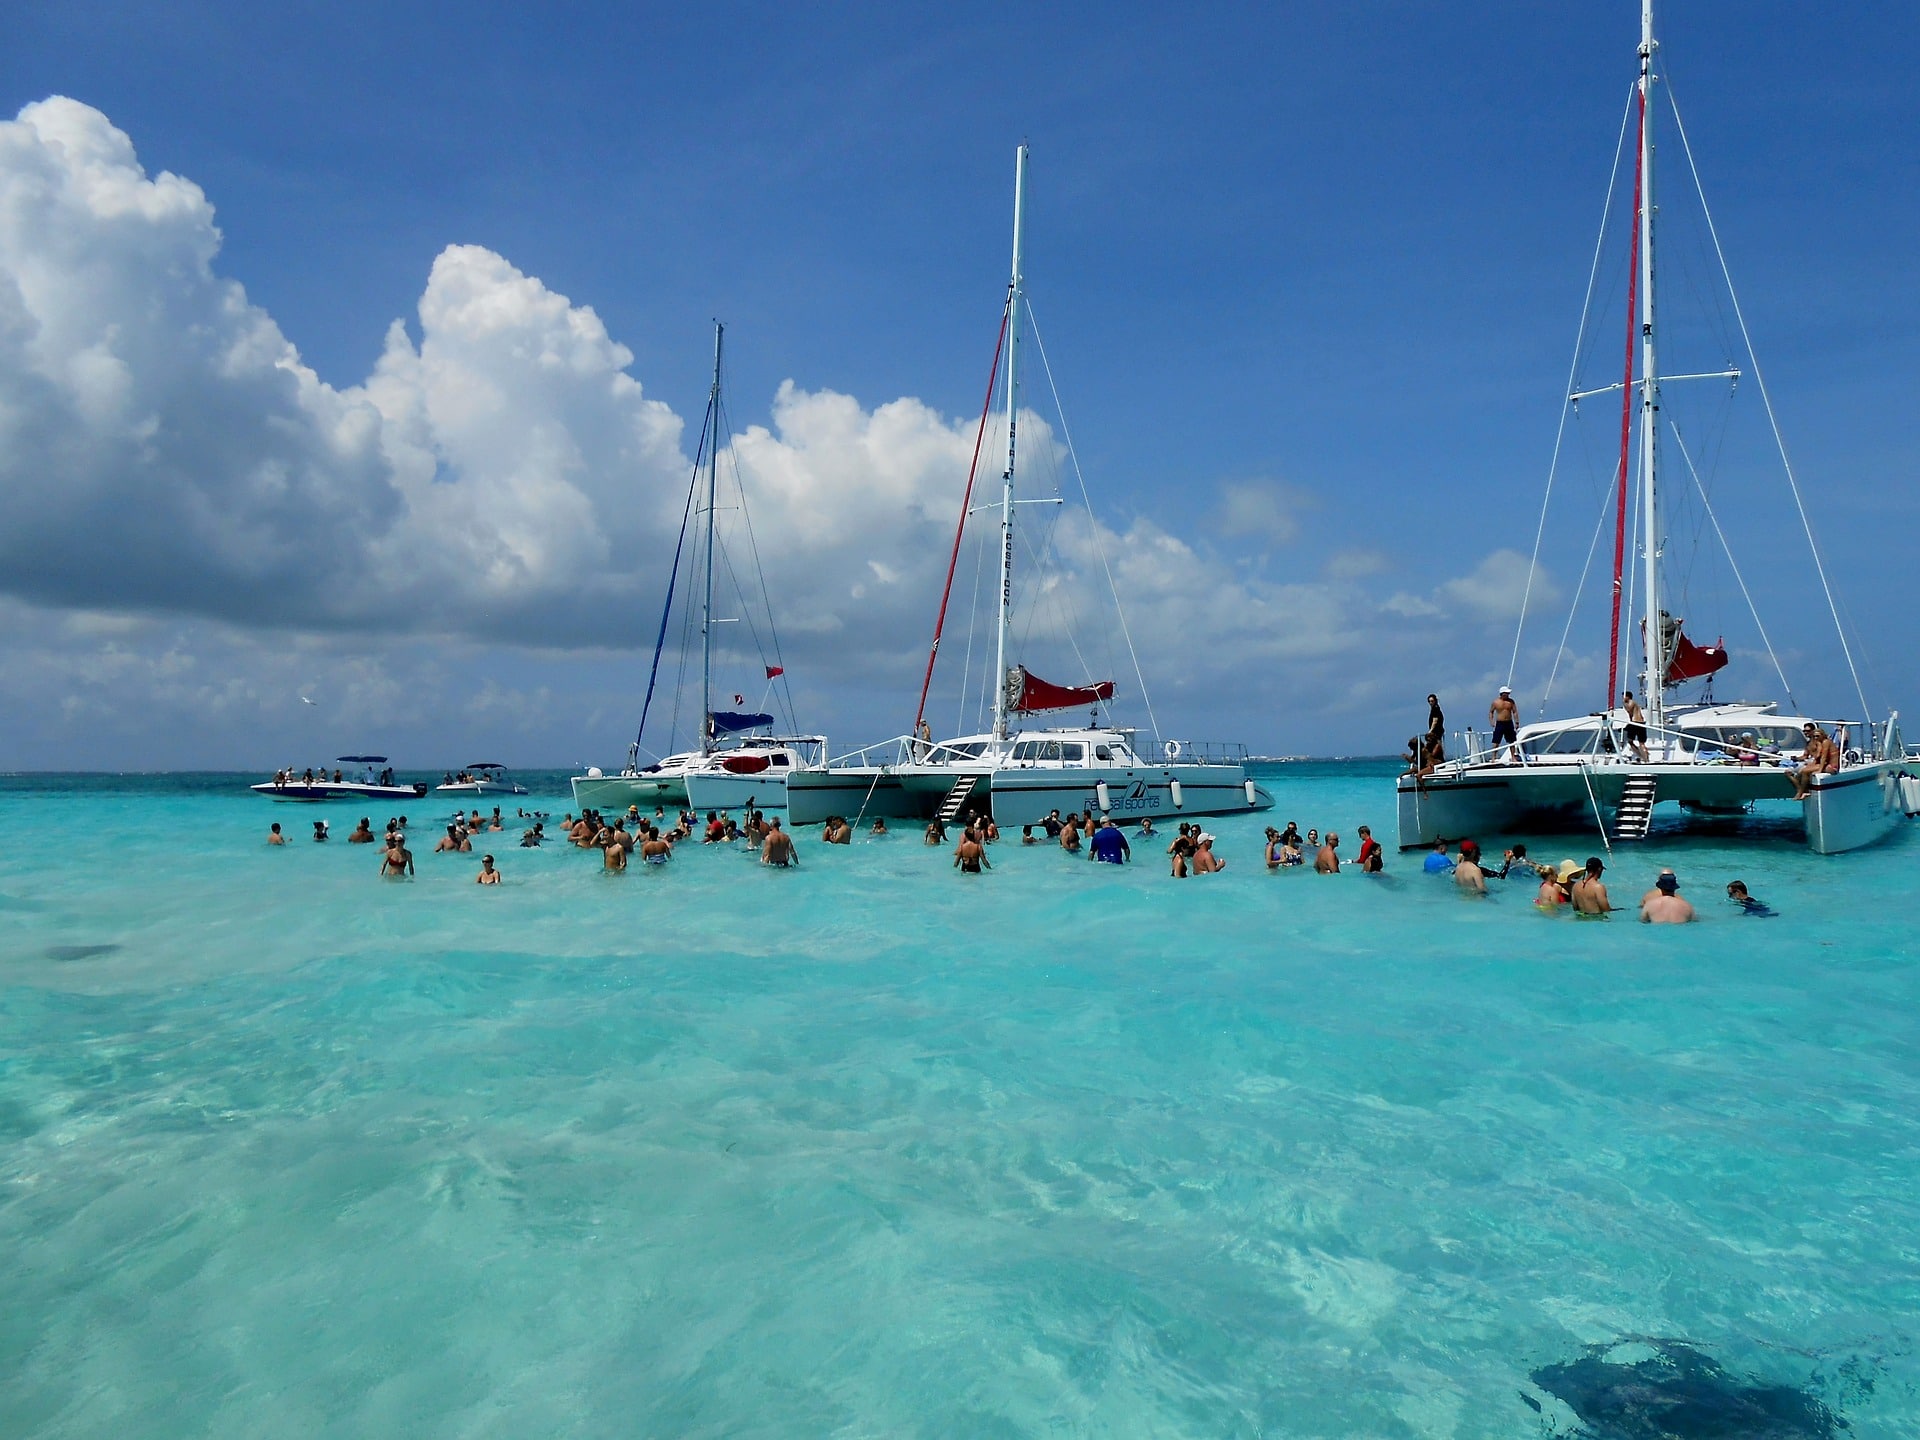 kaaimaneilanden-georgetown-grand cayman-zee-activiteit